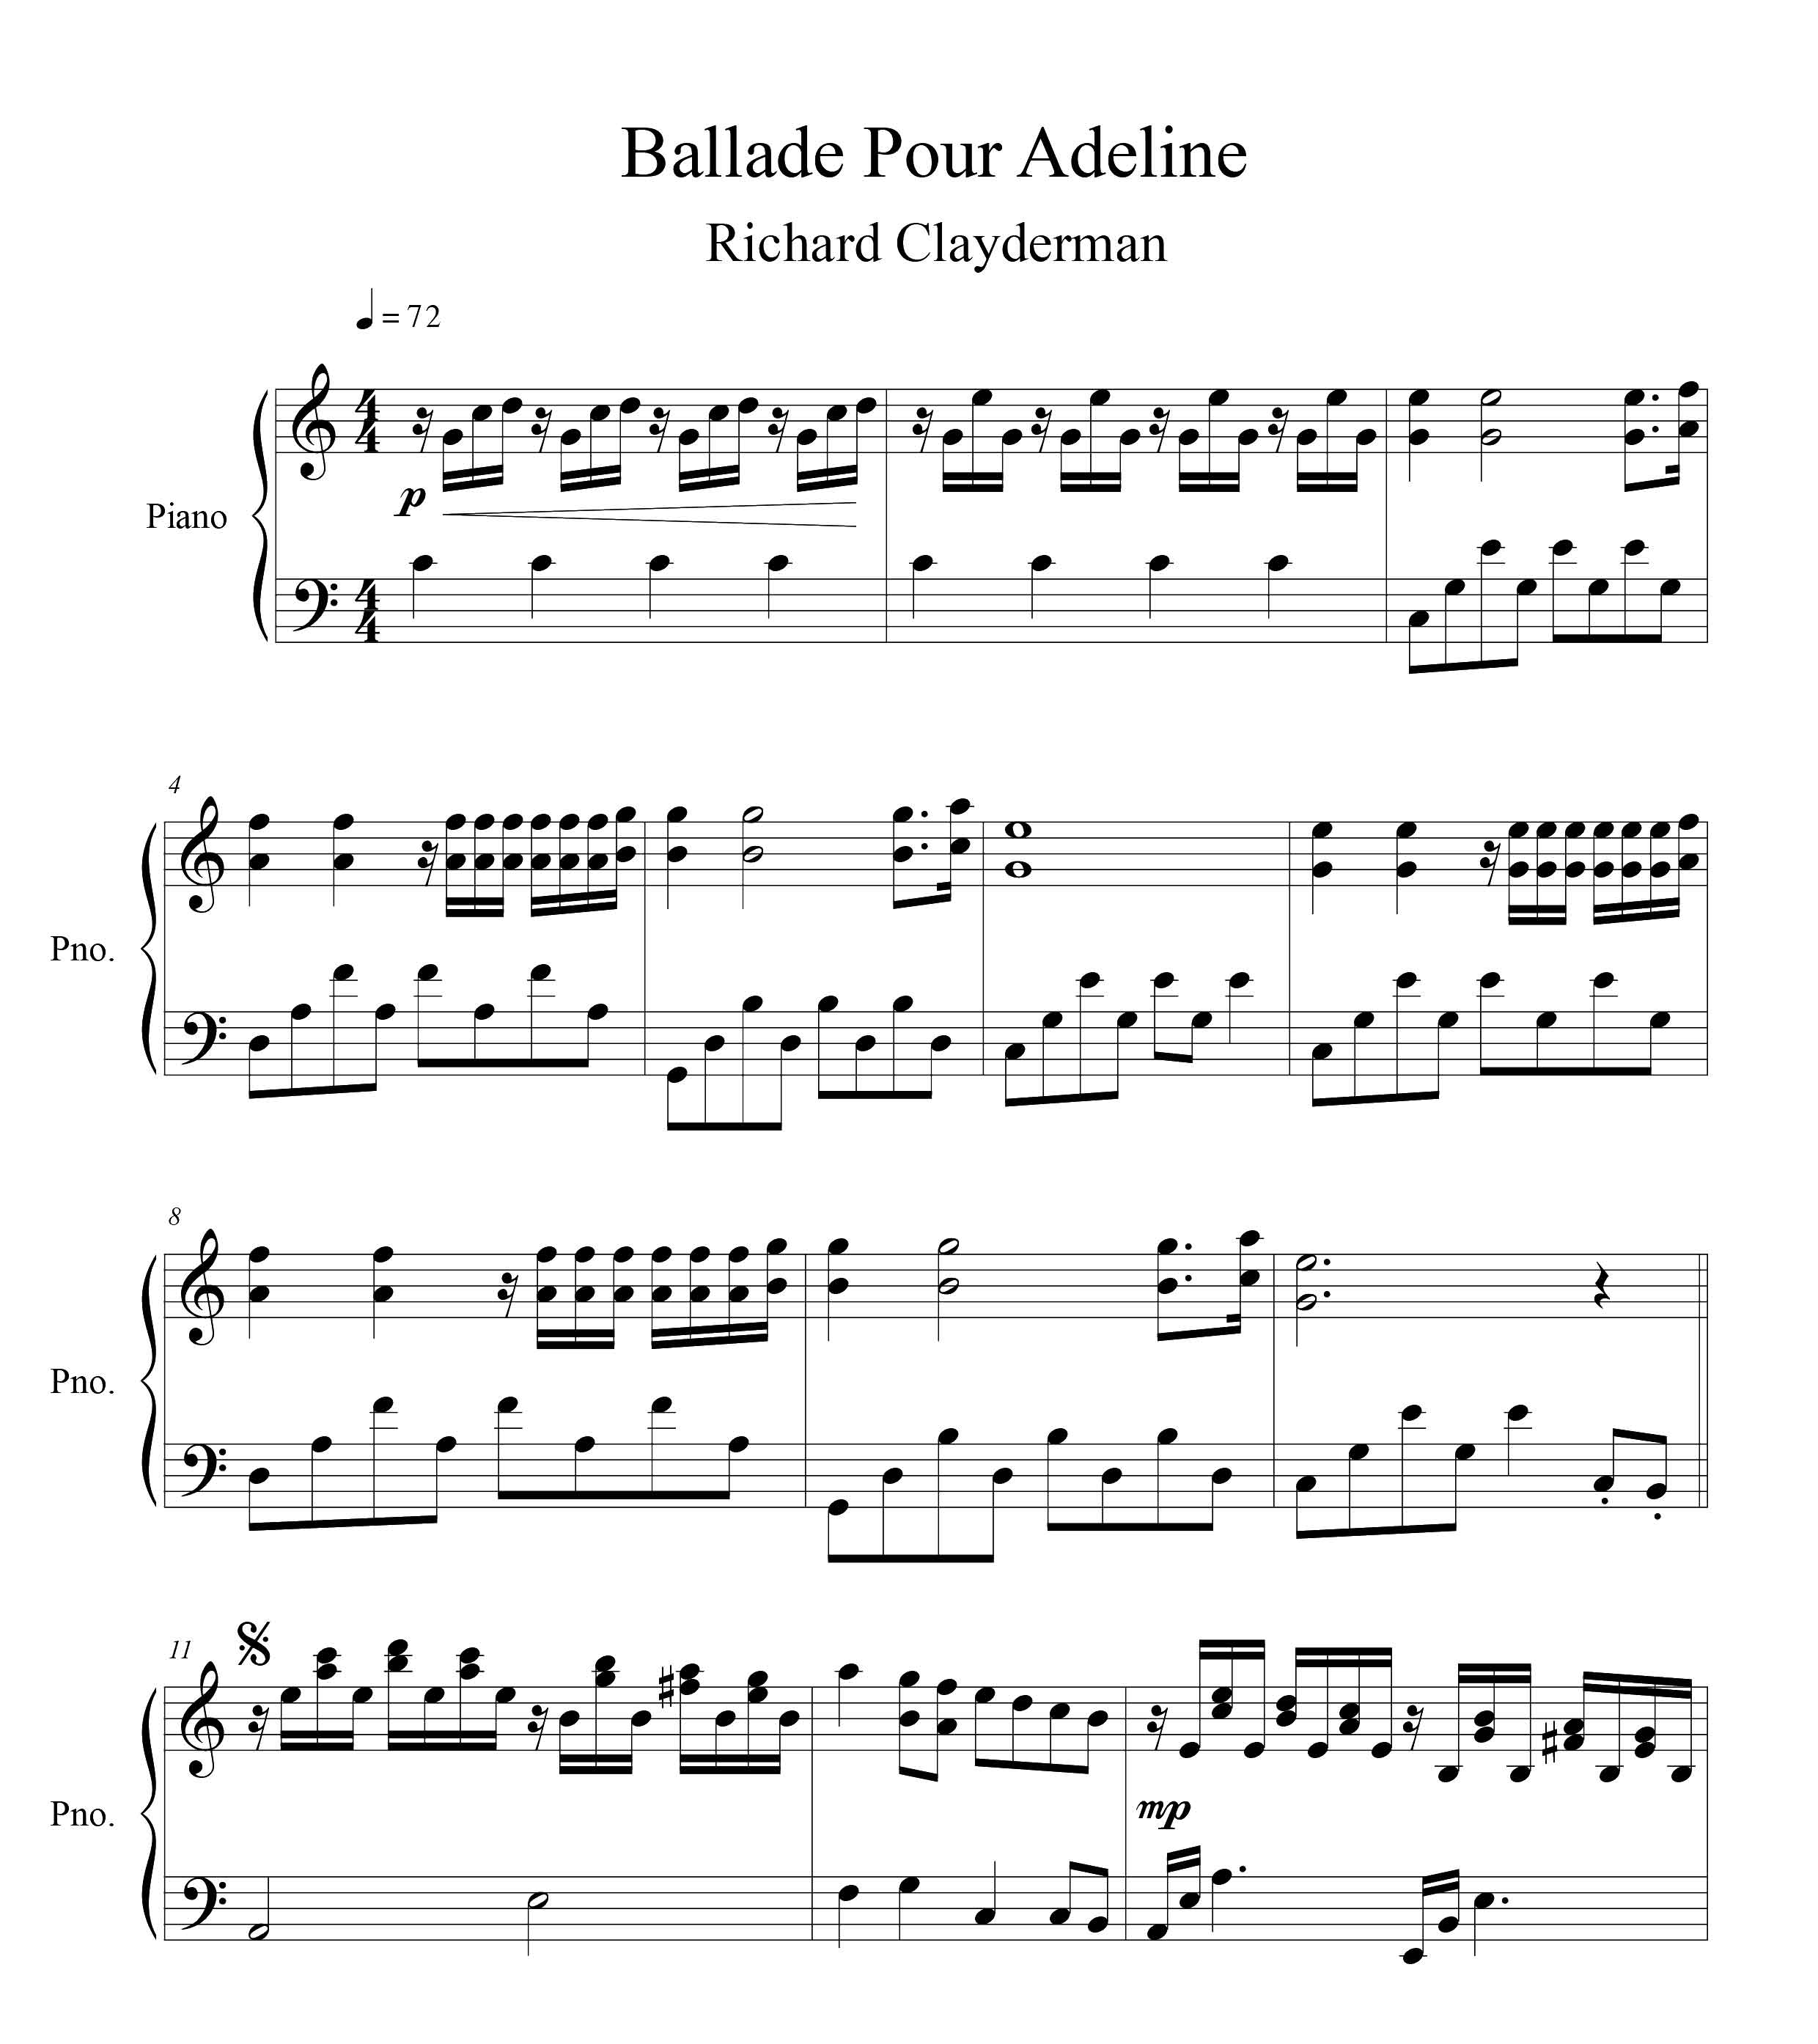 نت پیانوی قطعه Ballade Pour Adeline از ریچارد کلایدرمن